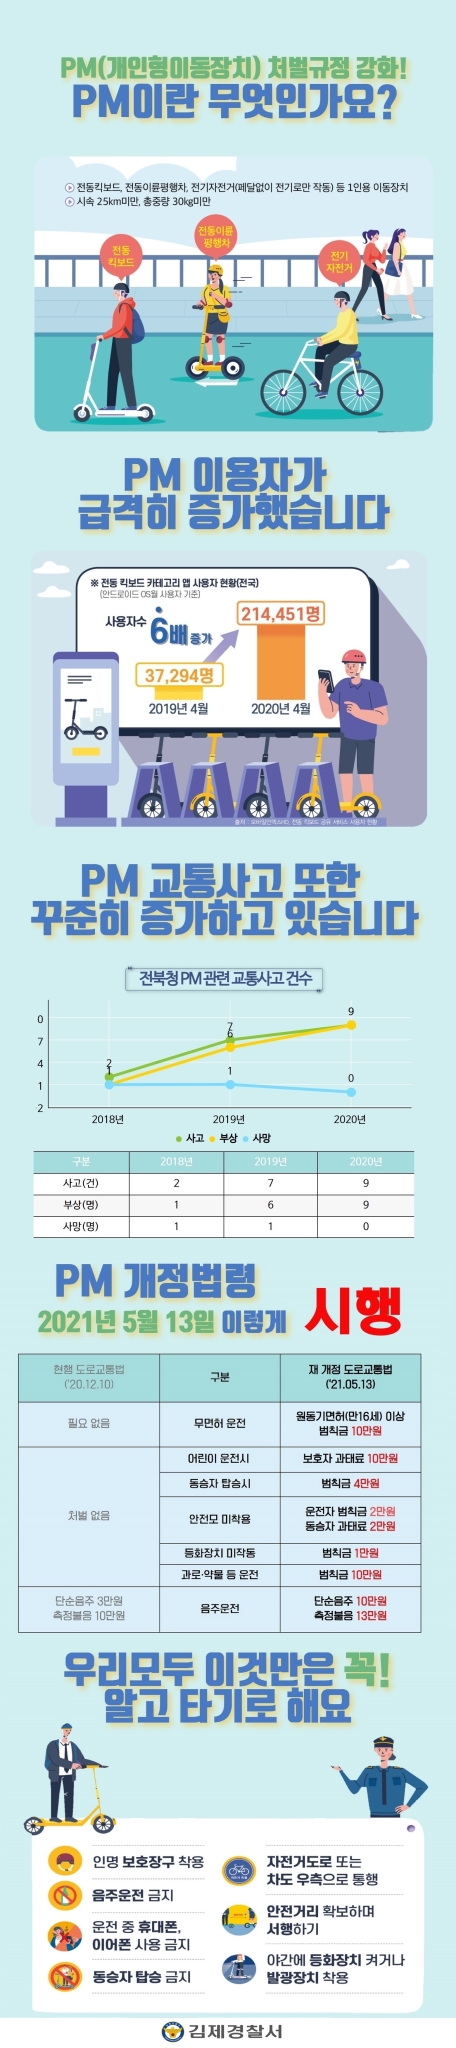 PM 홍보 카드뉴스(1슬라이드)